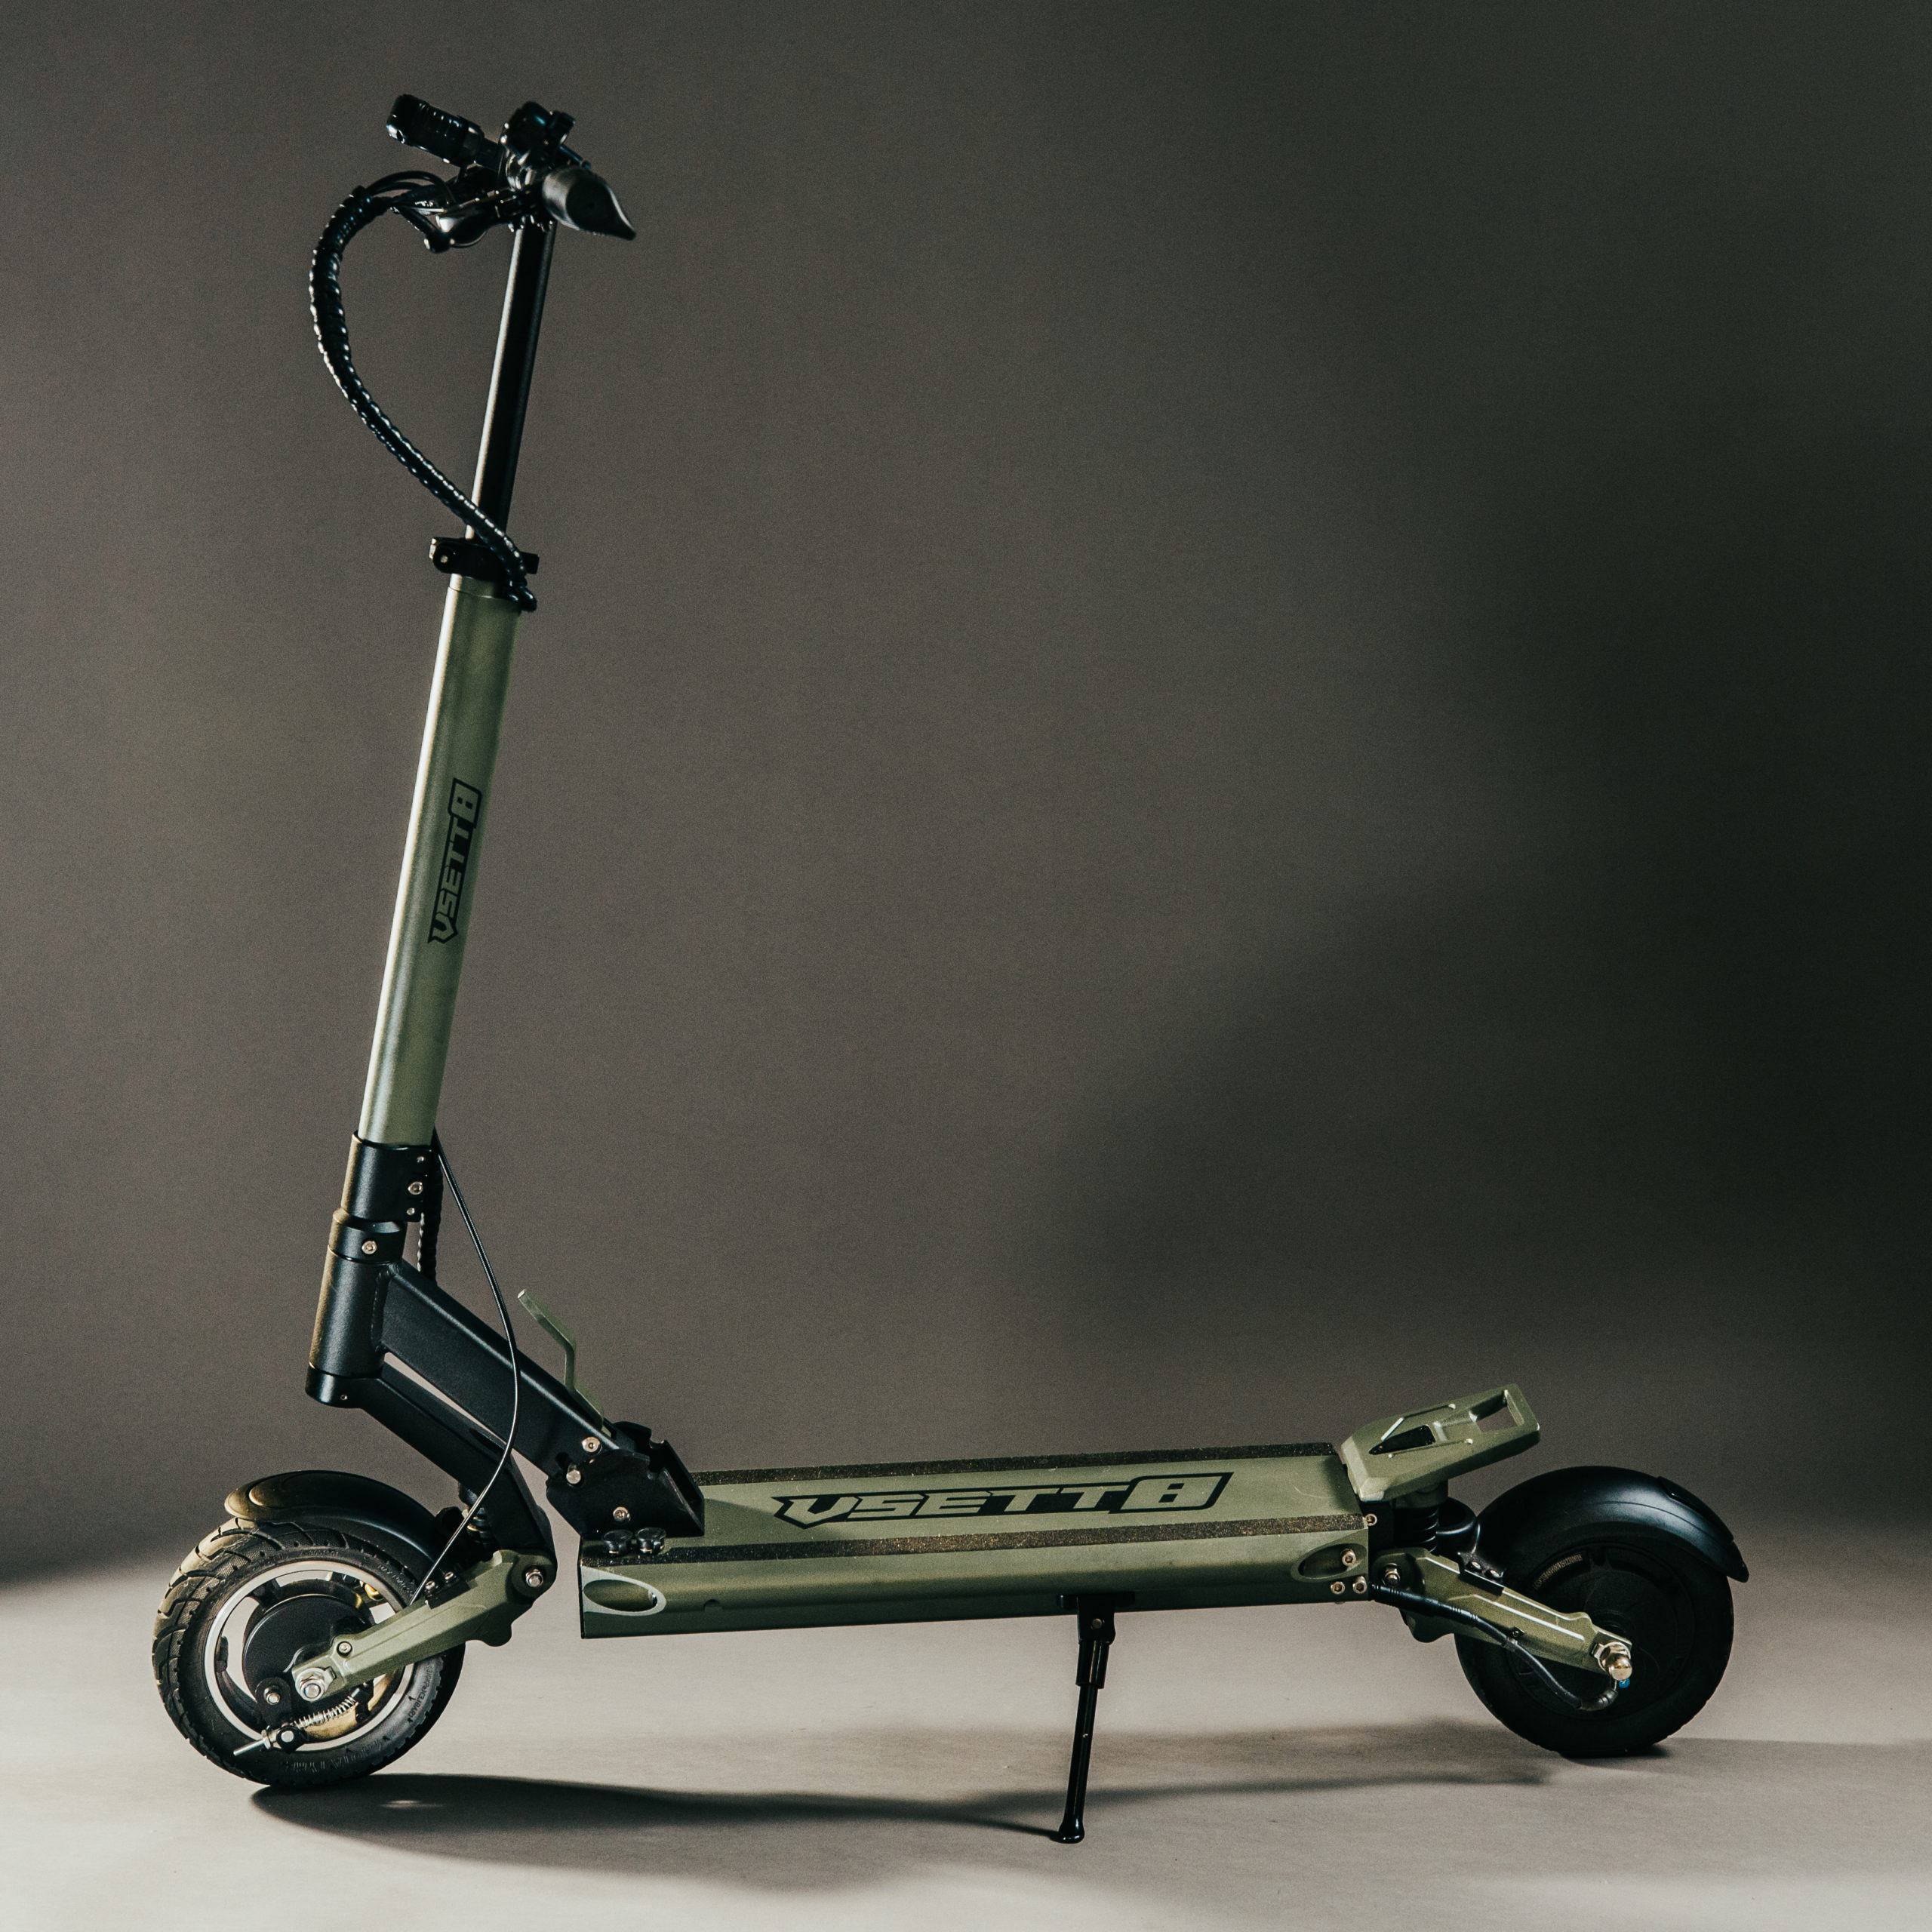 Vsett 8+ electric scooter